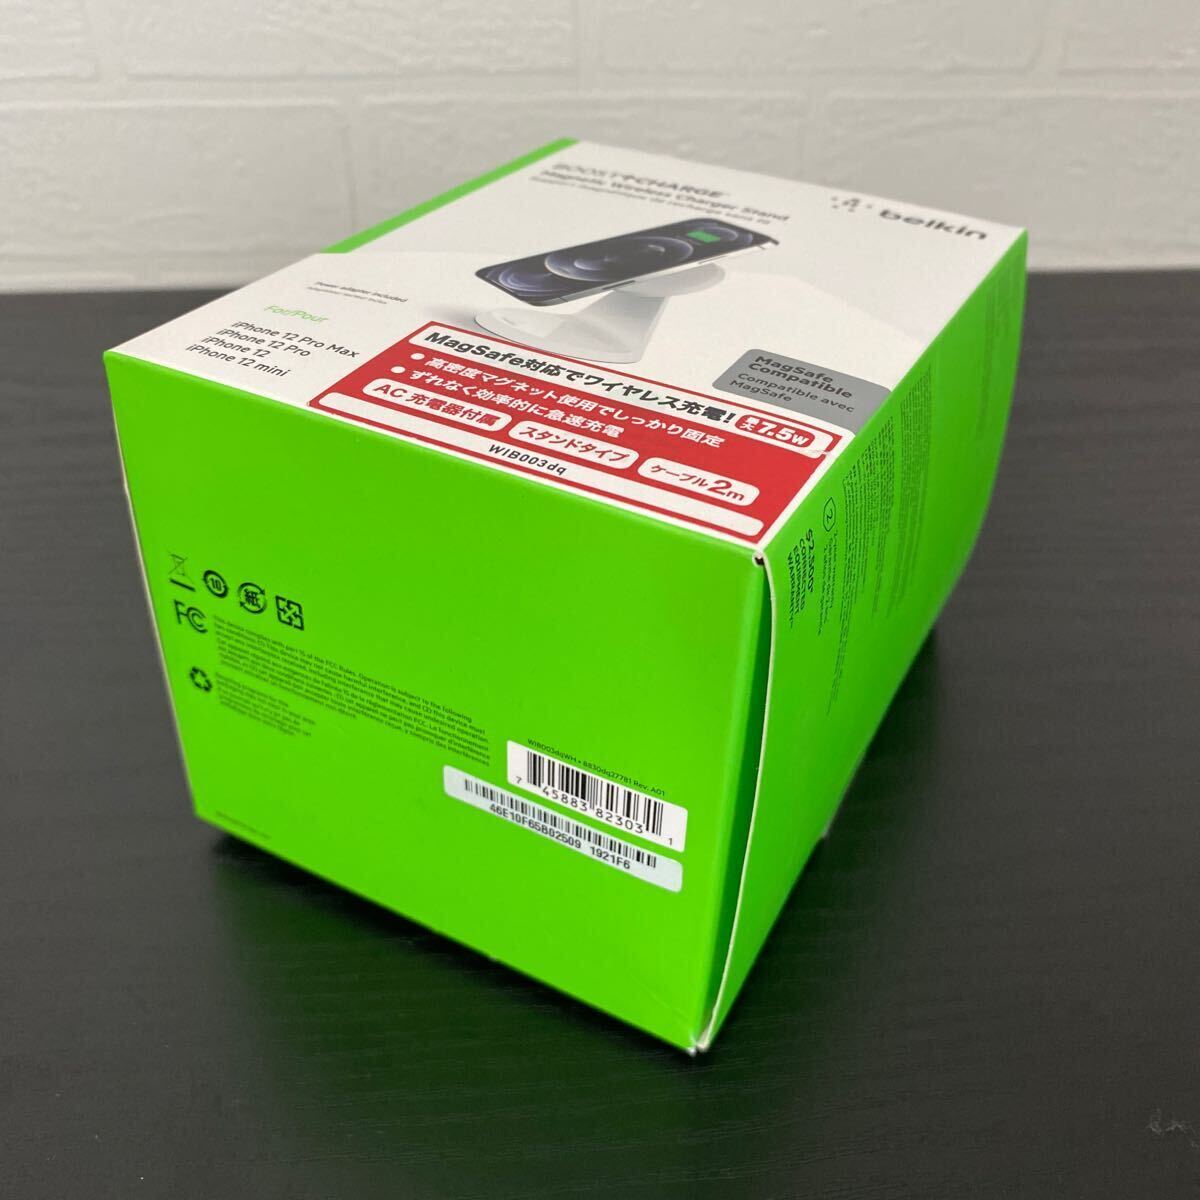 新品☆Belkin（ベルキン）BOOST↑CHARGE WIB003dqWH MagSafe対応 磁気ワイヤレス充電スタンド（7.5W）ホワイト